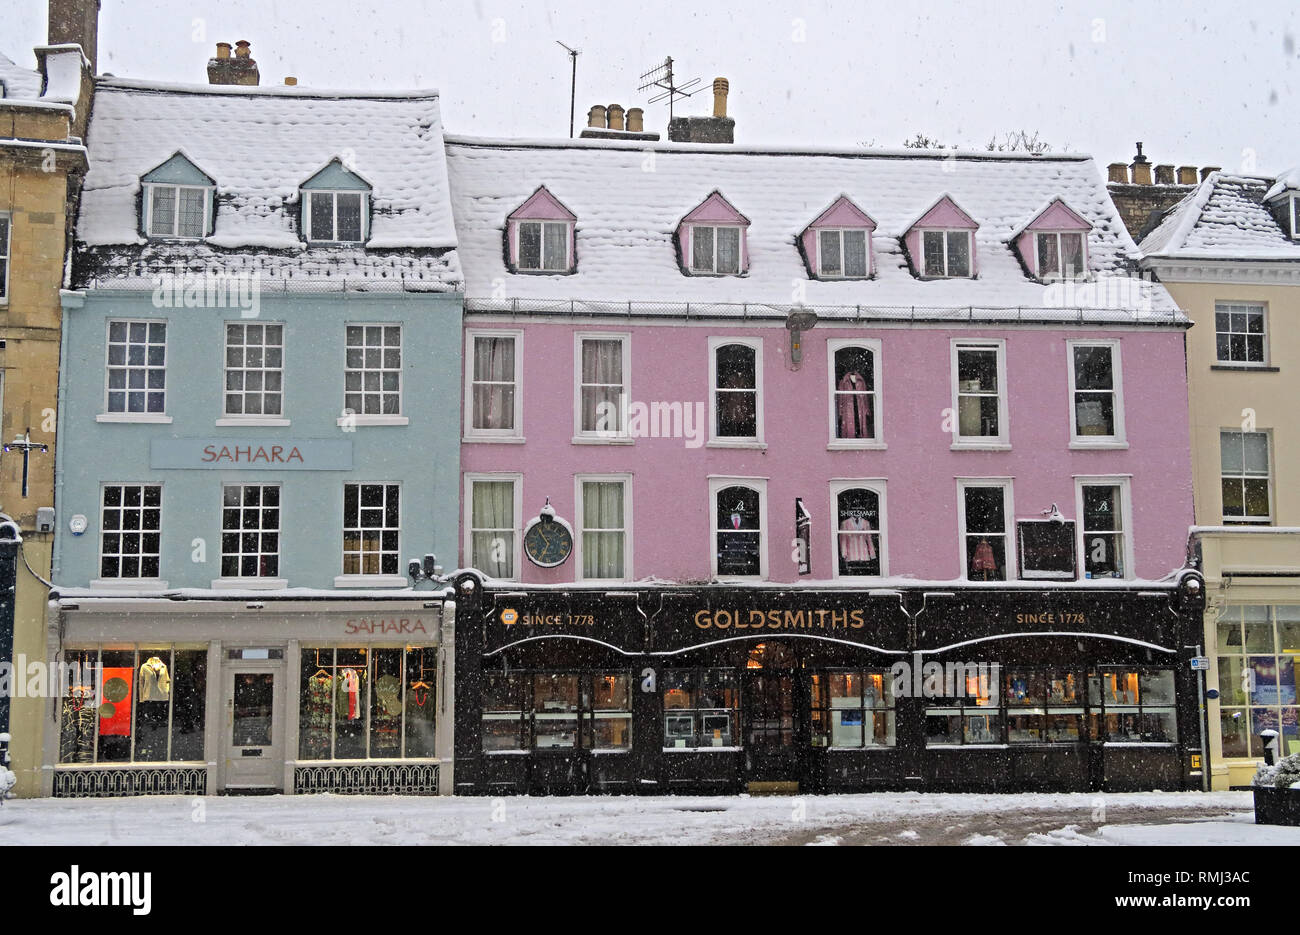 Neige de l'hiver sur la place du marché, le centre-ville de Cirencester, Gloucestershire Cotswolds, Angleterre du Sud-Ouest, Royaume-Uni Banque D'Images